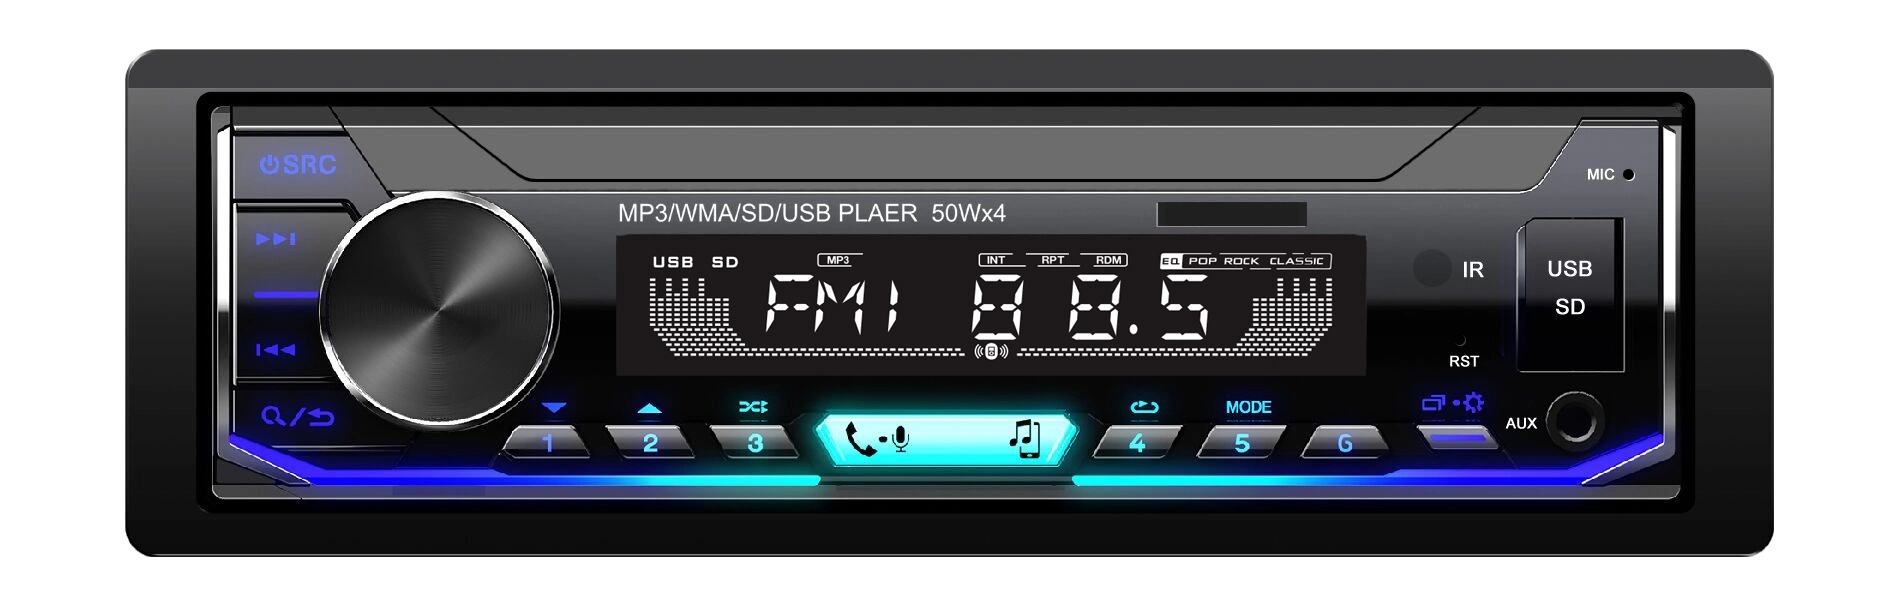 Цифровой радиоприемник с FM автомобильная аудио проигрывателя MP3, FM-передатчик